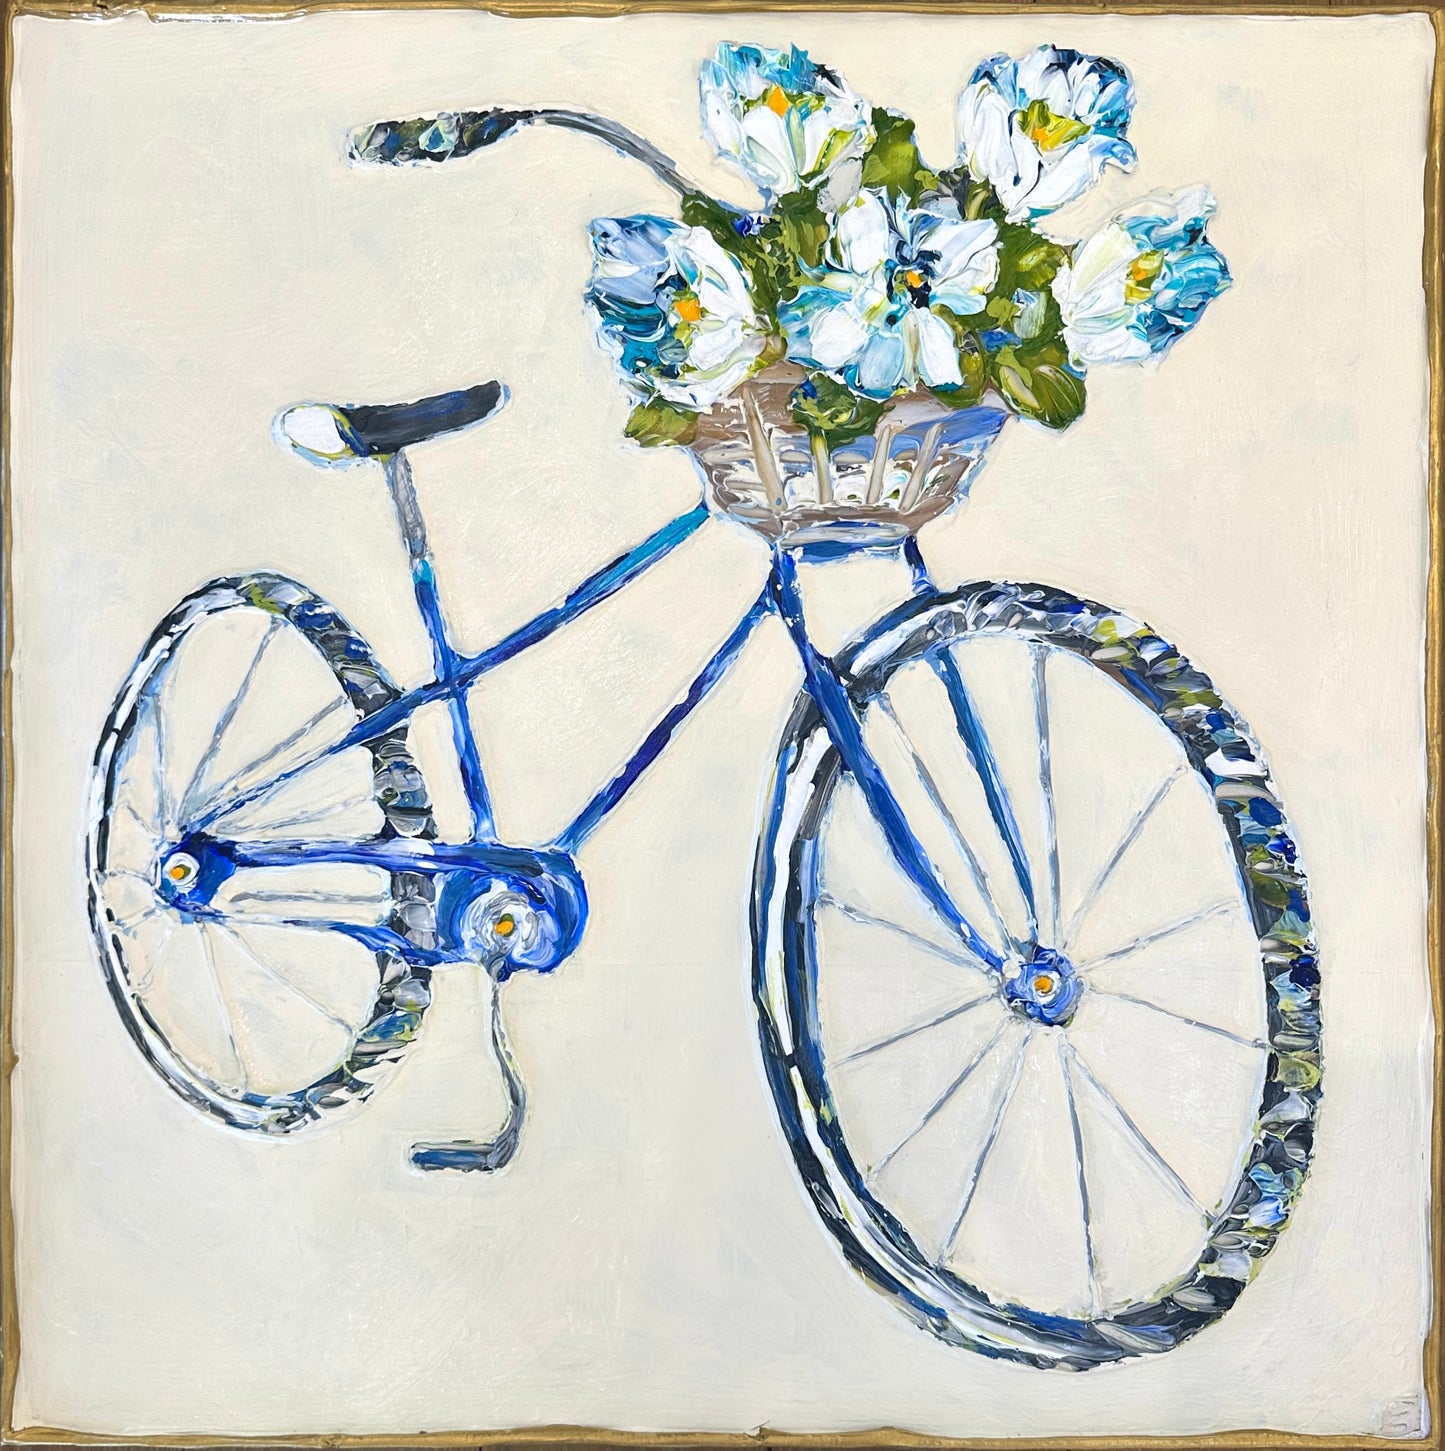 Bike with Flowers 24”x24”